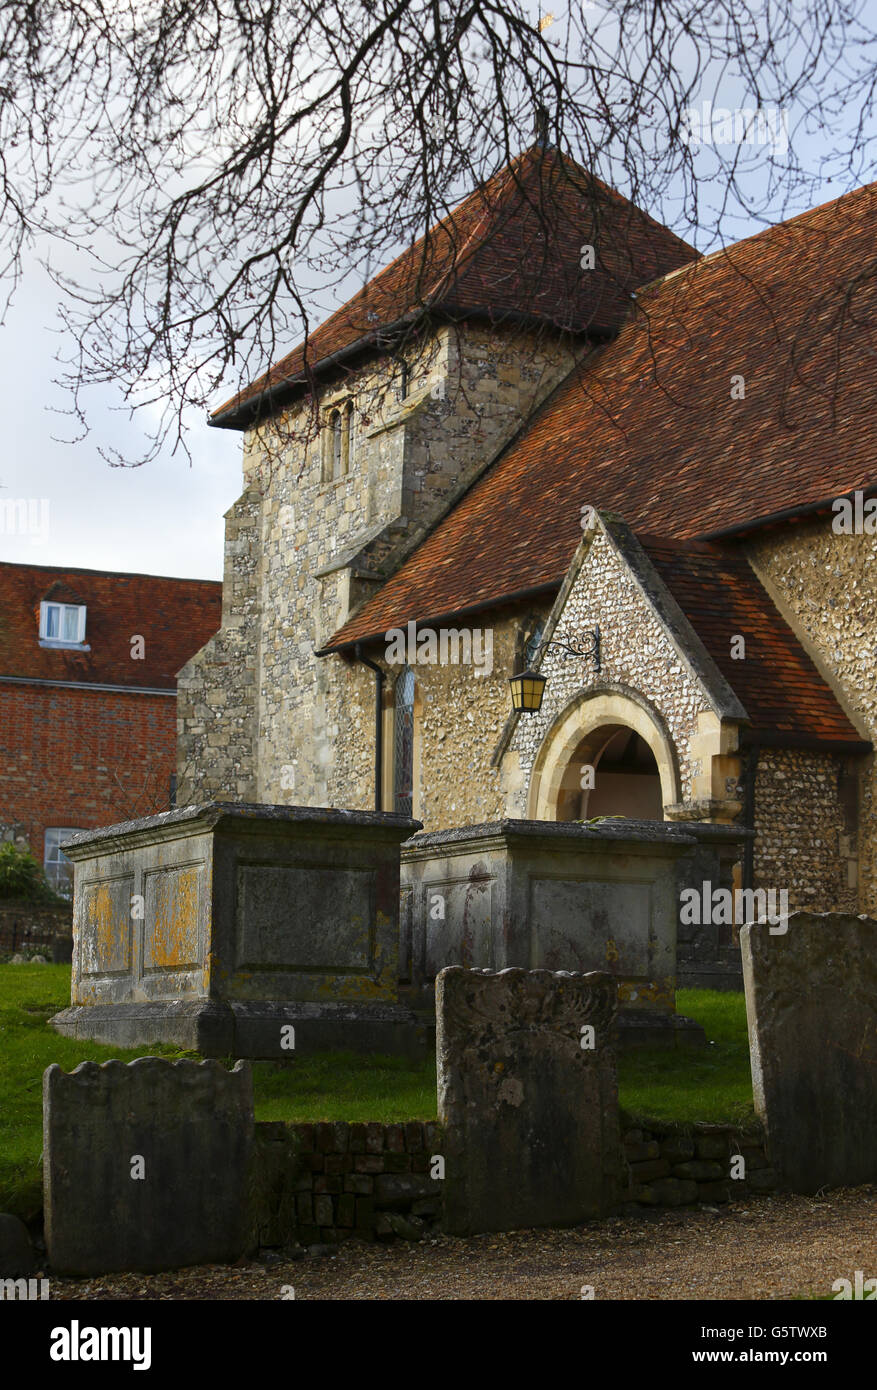 L'église Saint-Bartholomée de Winchester, dans le Hampshire, où les archéologues de l'université de Winchester, ont fait une demande pour exhumer et étudier les os que l'on croyait se trouver dans une tombe non marquée à l'église dans un effort pour établir s'ils sont ceux du roi Saxon Alfred le Grand. Banque D'Images